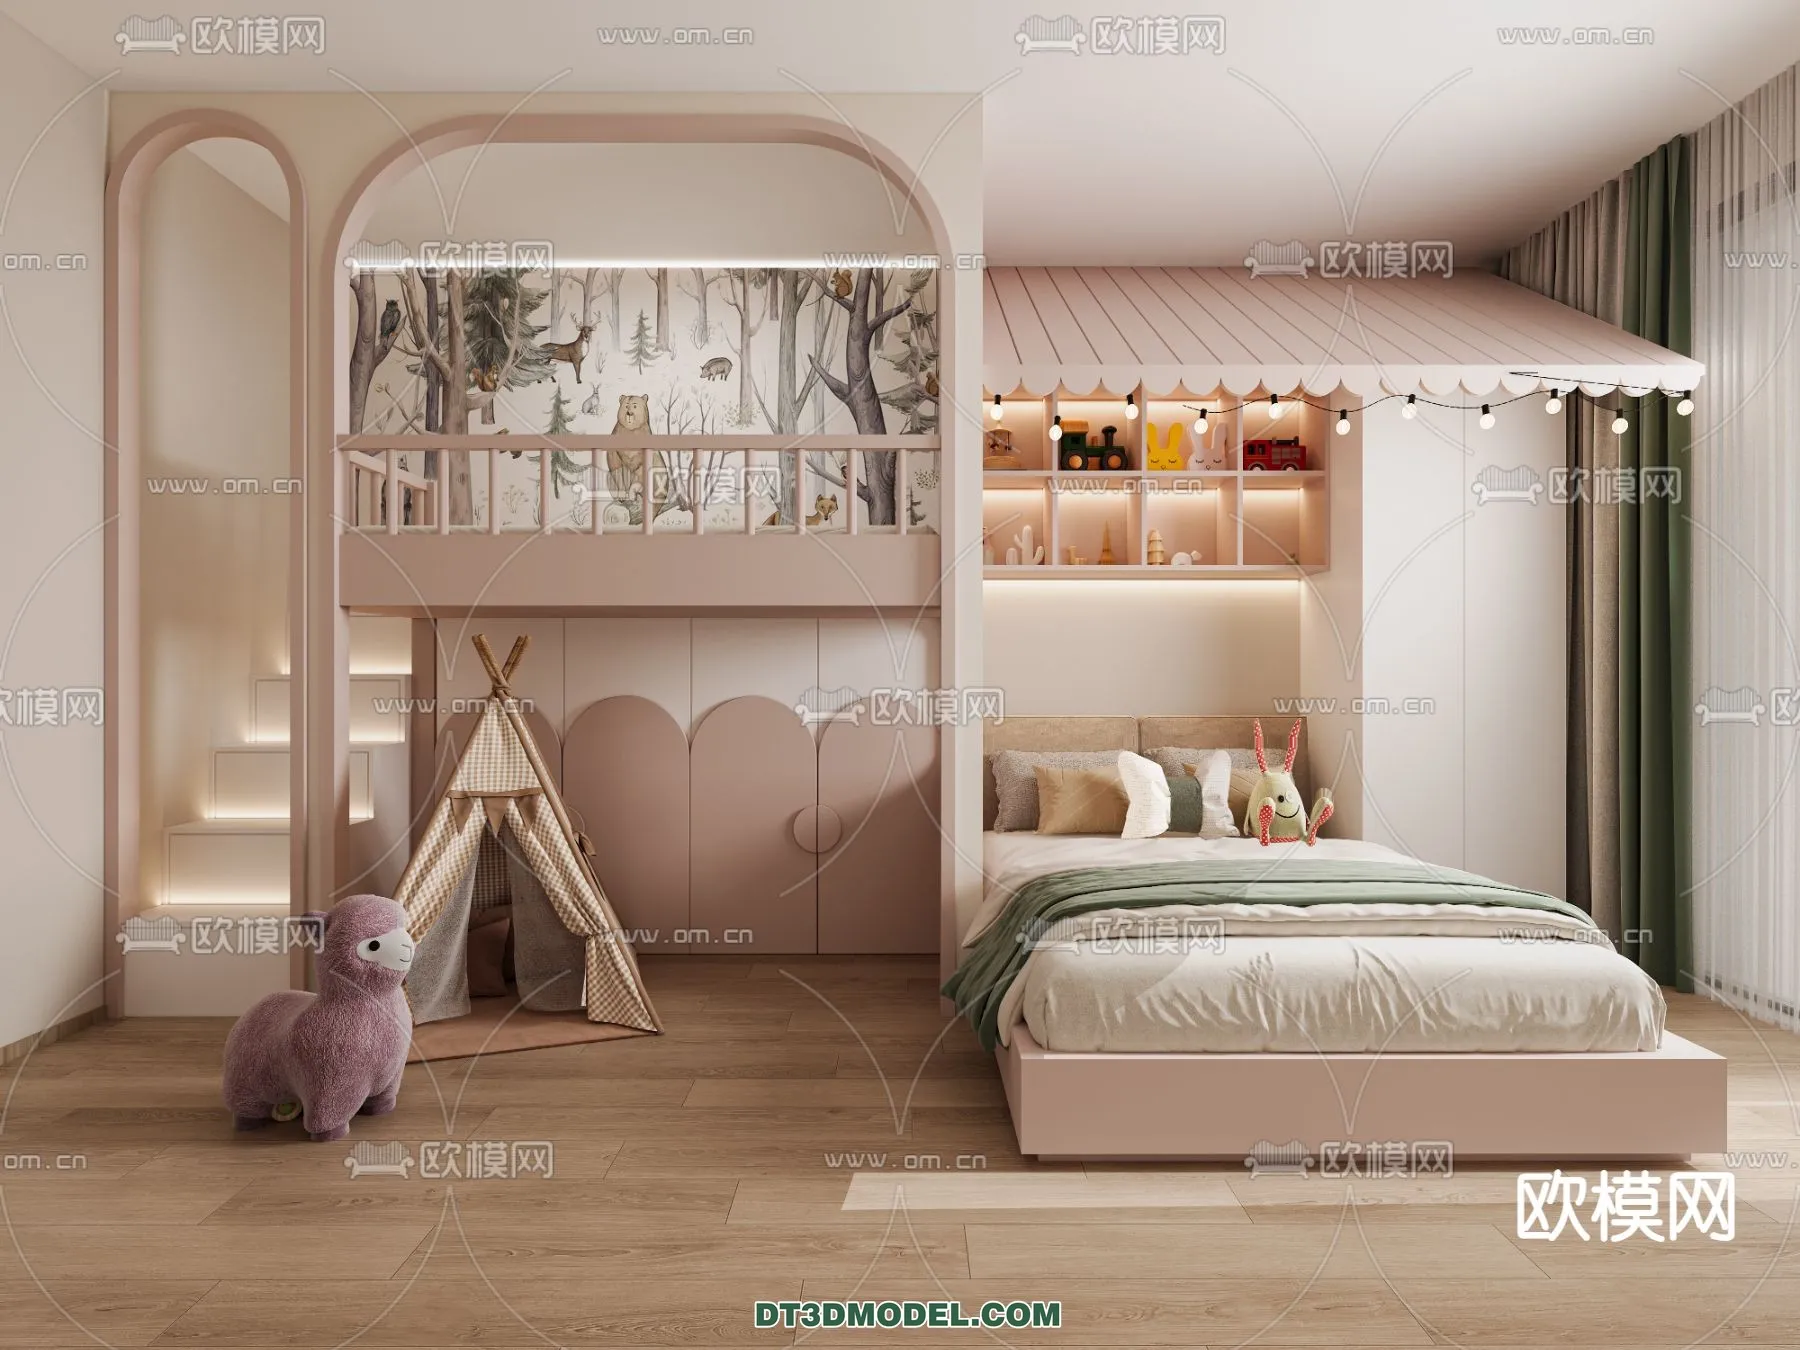 Tatami Bedroom – Japan Bedroom – 3D Scene – 053